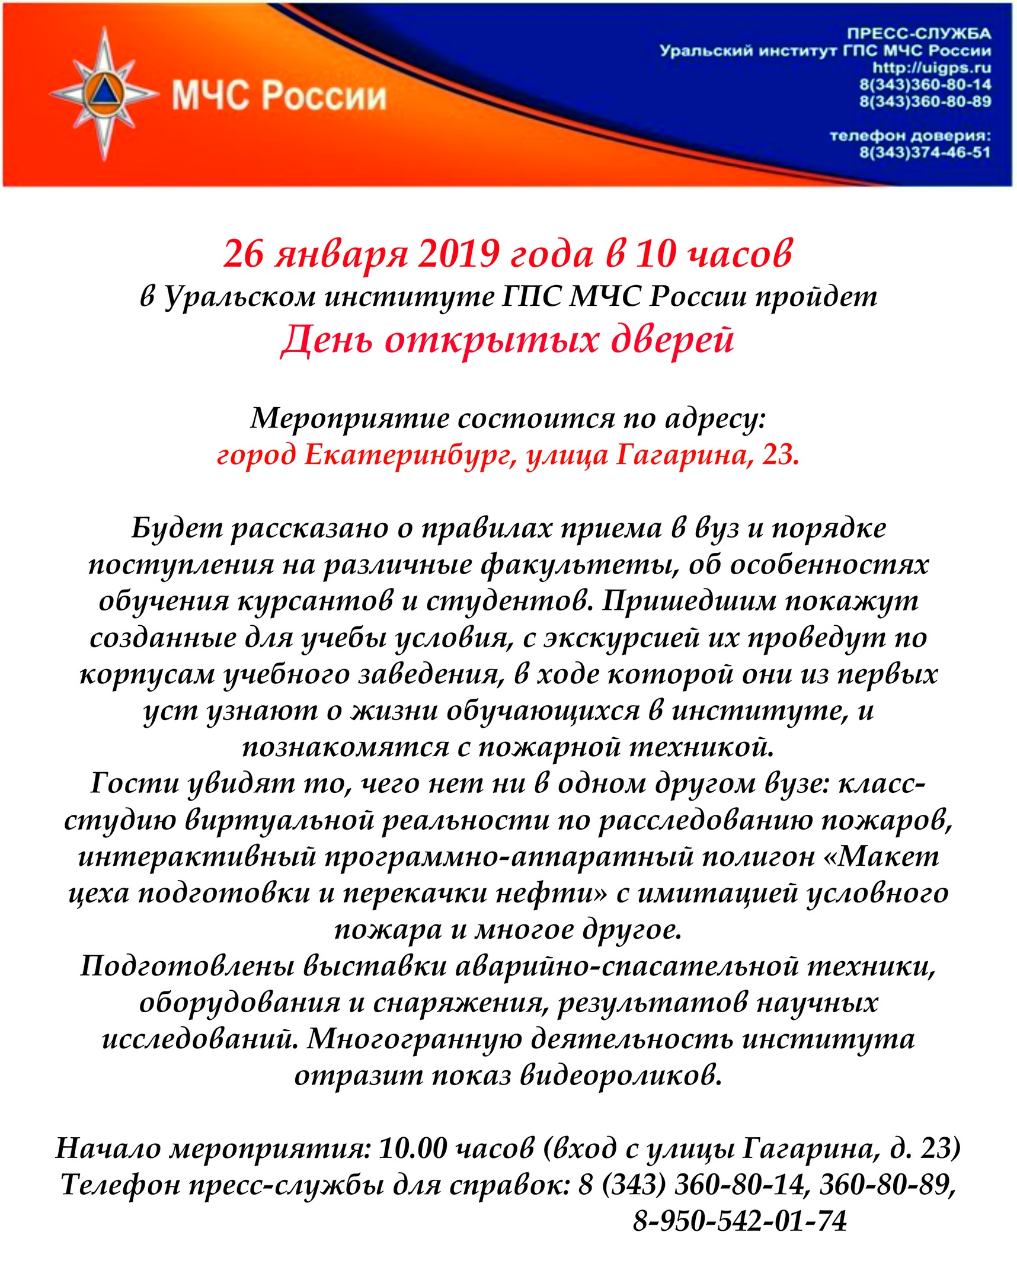 26 января 2019 года в Уральском институте ГПС МЧС России состоится День открытых дверей.